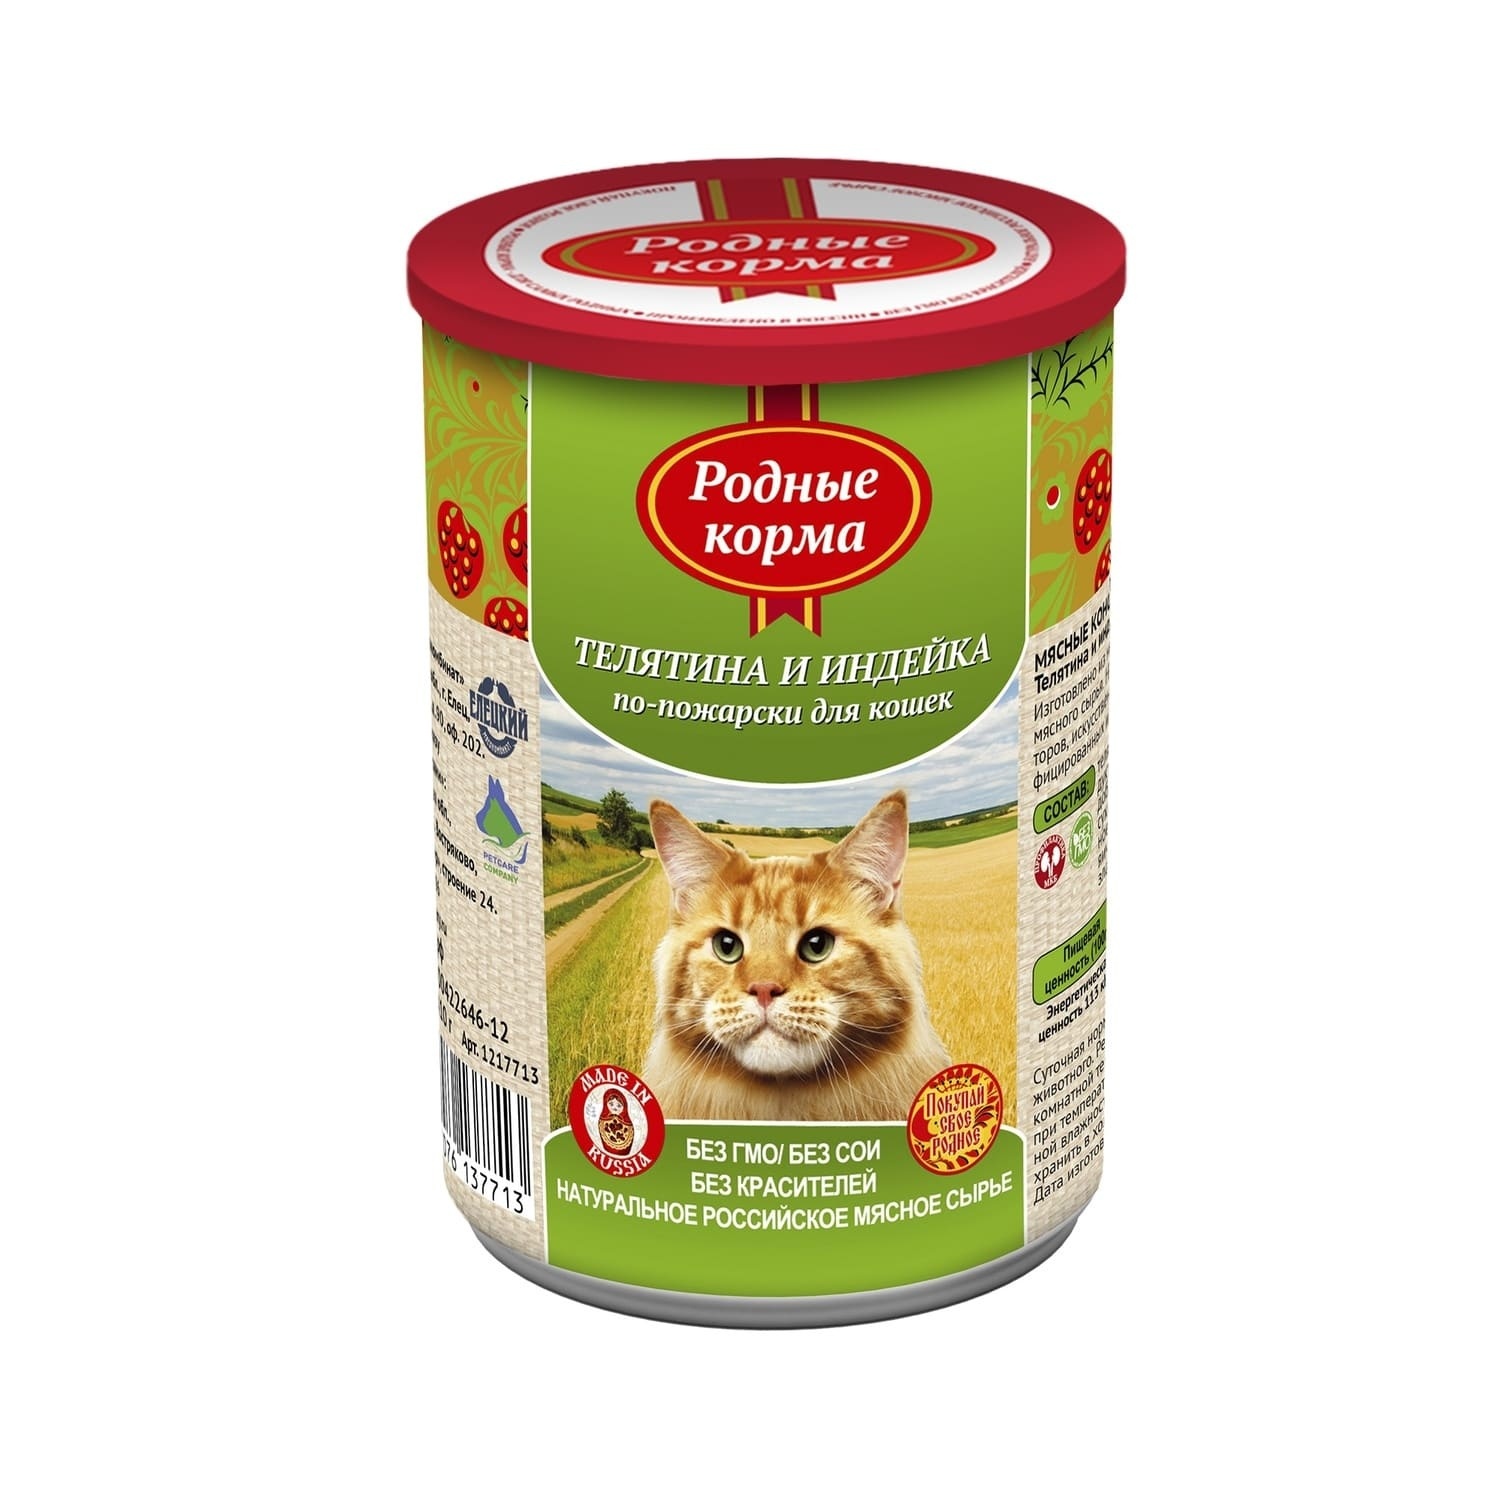 Родные корма Родные корма консервы для кошек, телятина и индейка по-пожарски (410 г) цена и фото